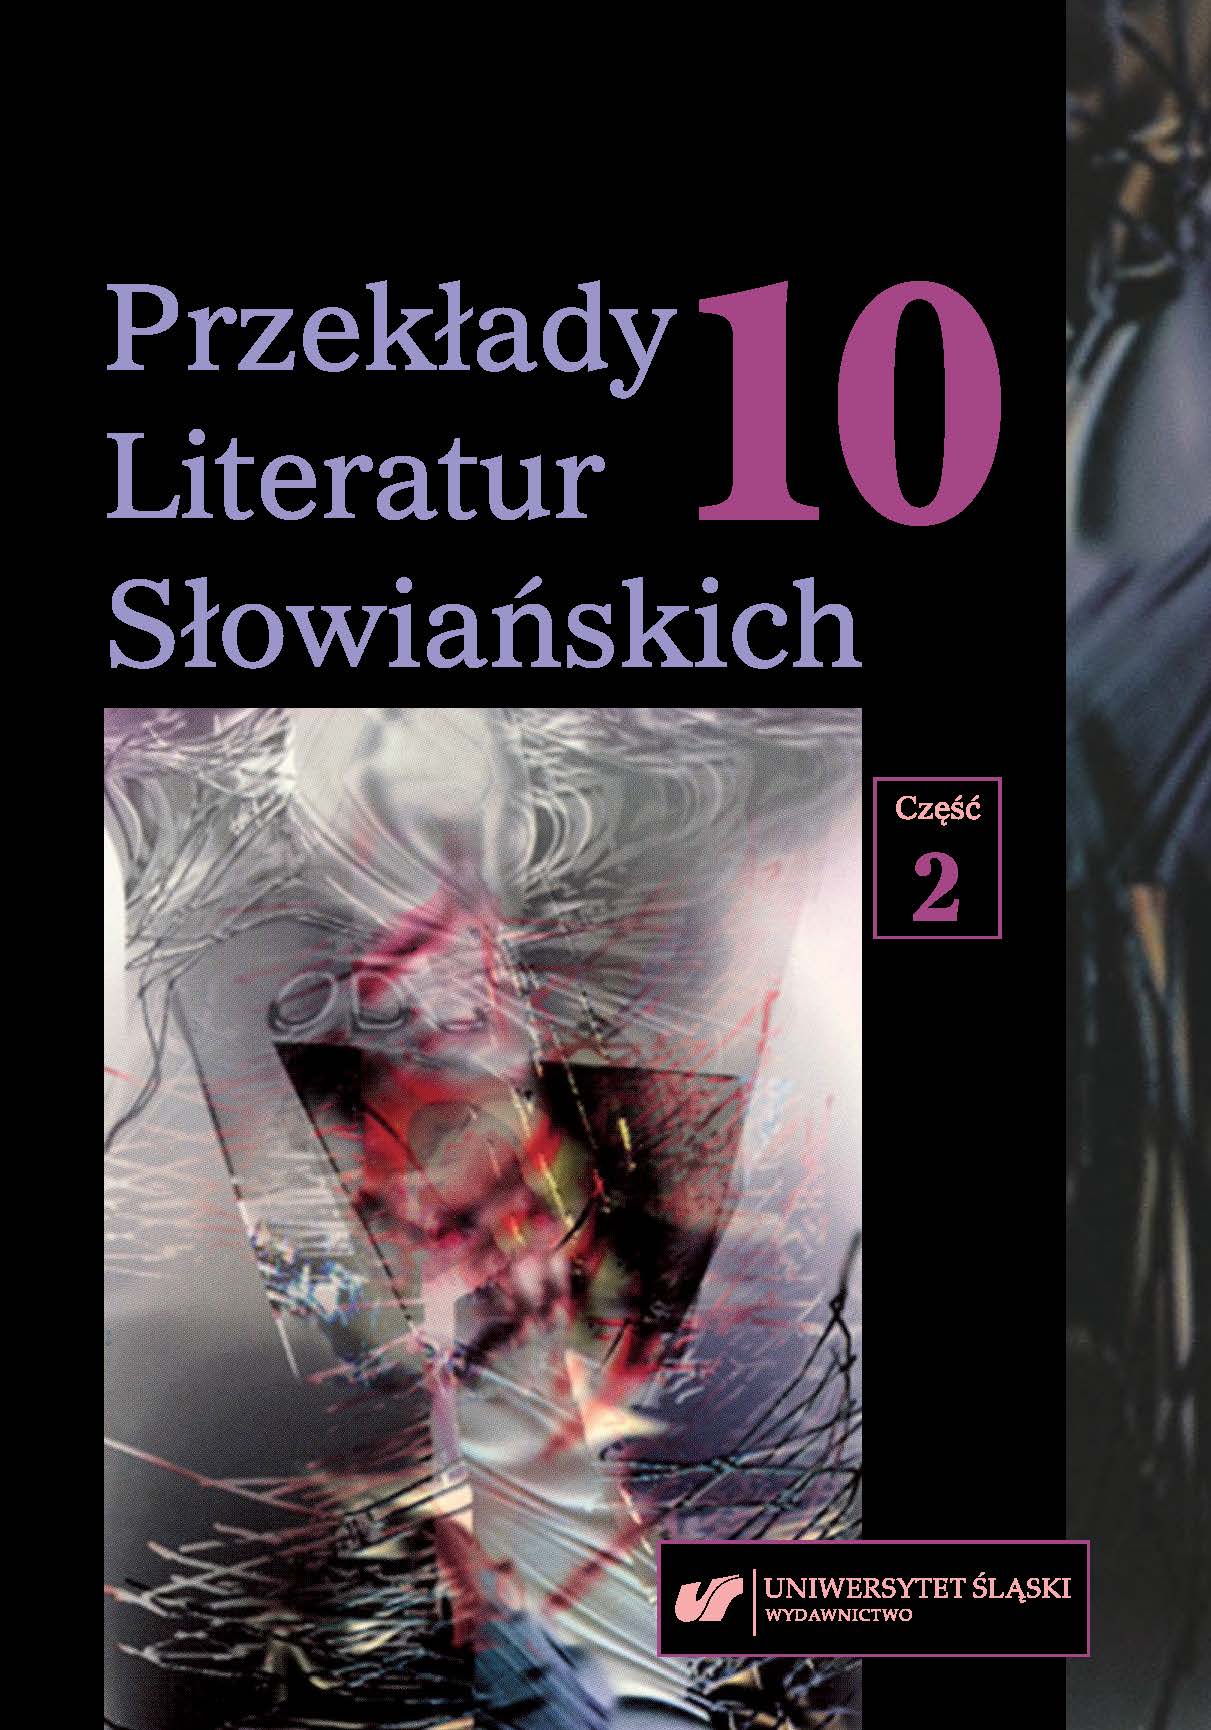 O obecności literatury polskiej w Czechach i czeskiej w Polsce. Komentarz do bibliografii przekładów w roku 2018